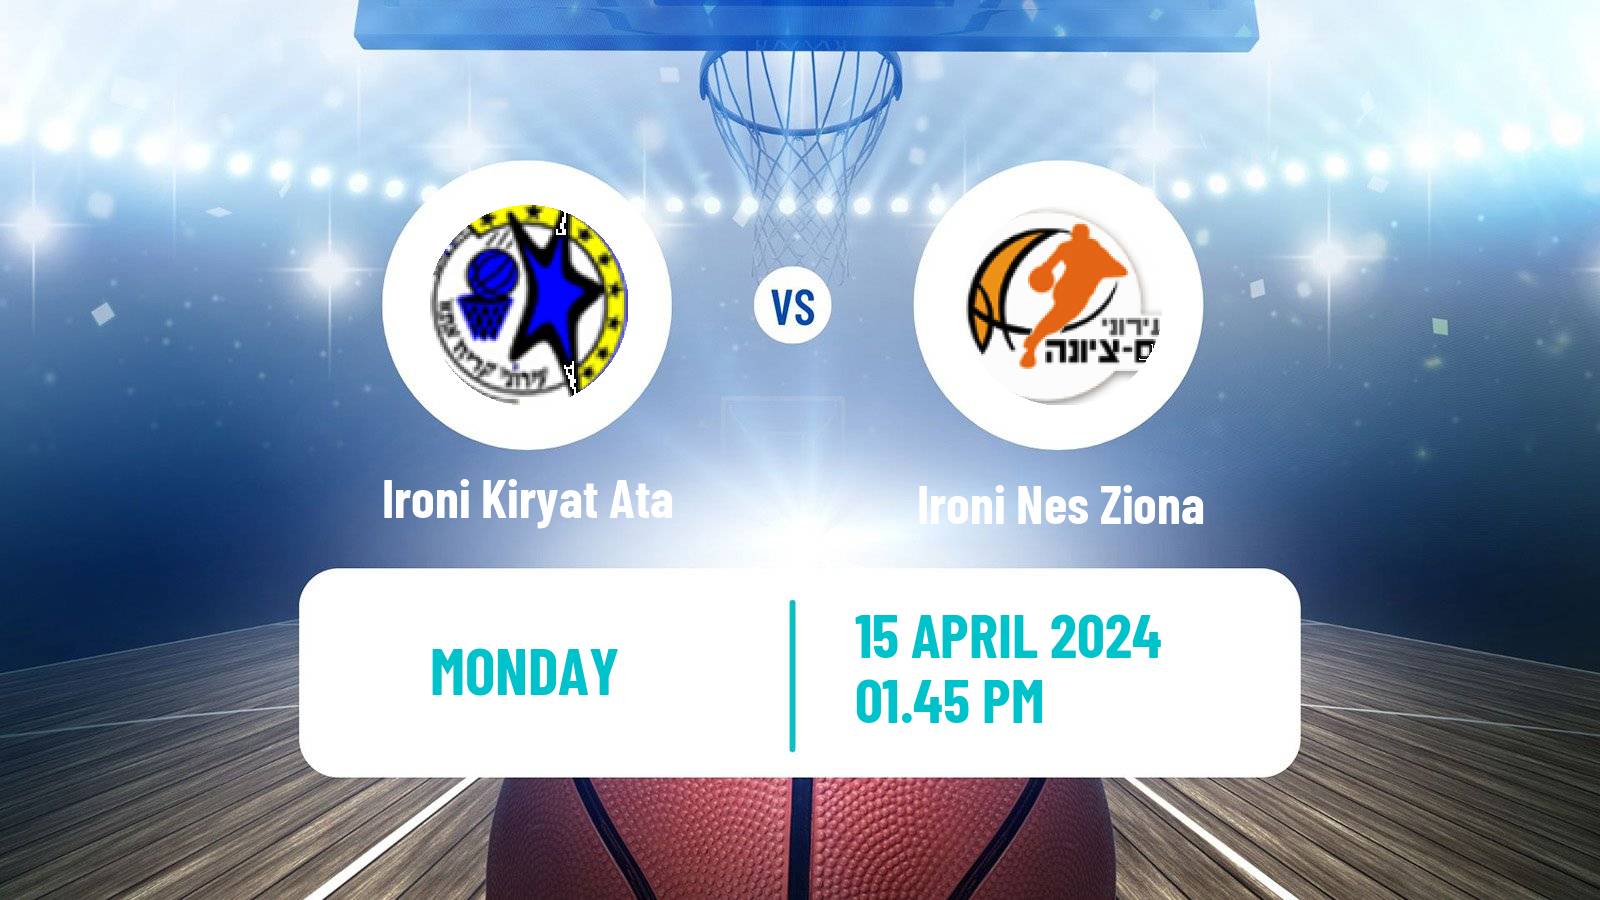 Basketball Israeli Basketball Super League Ironi Kiryat Ata - Ironi Nes Ziona